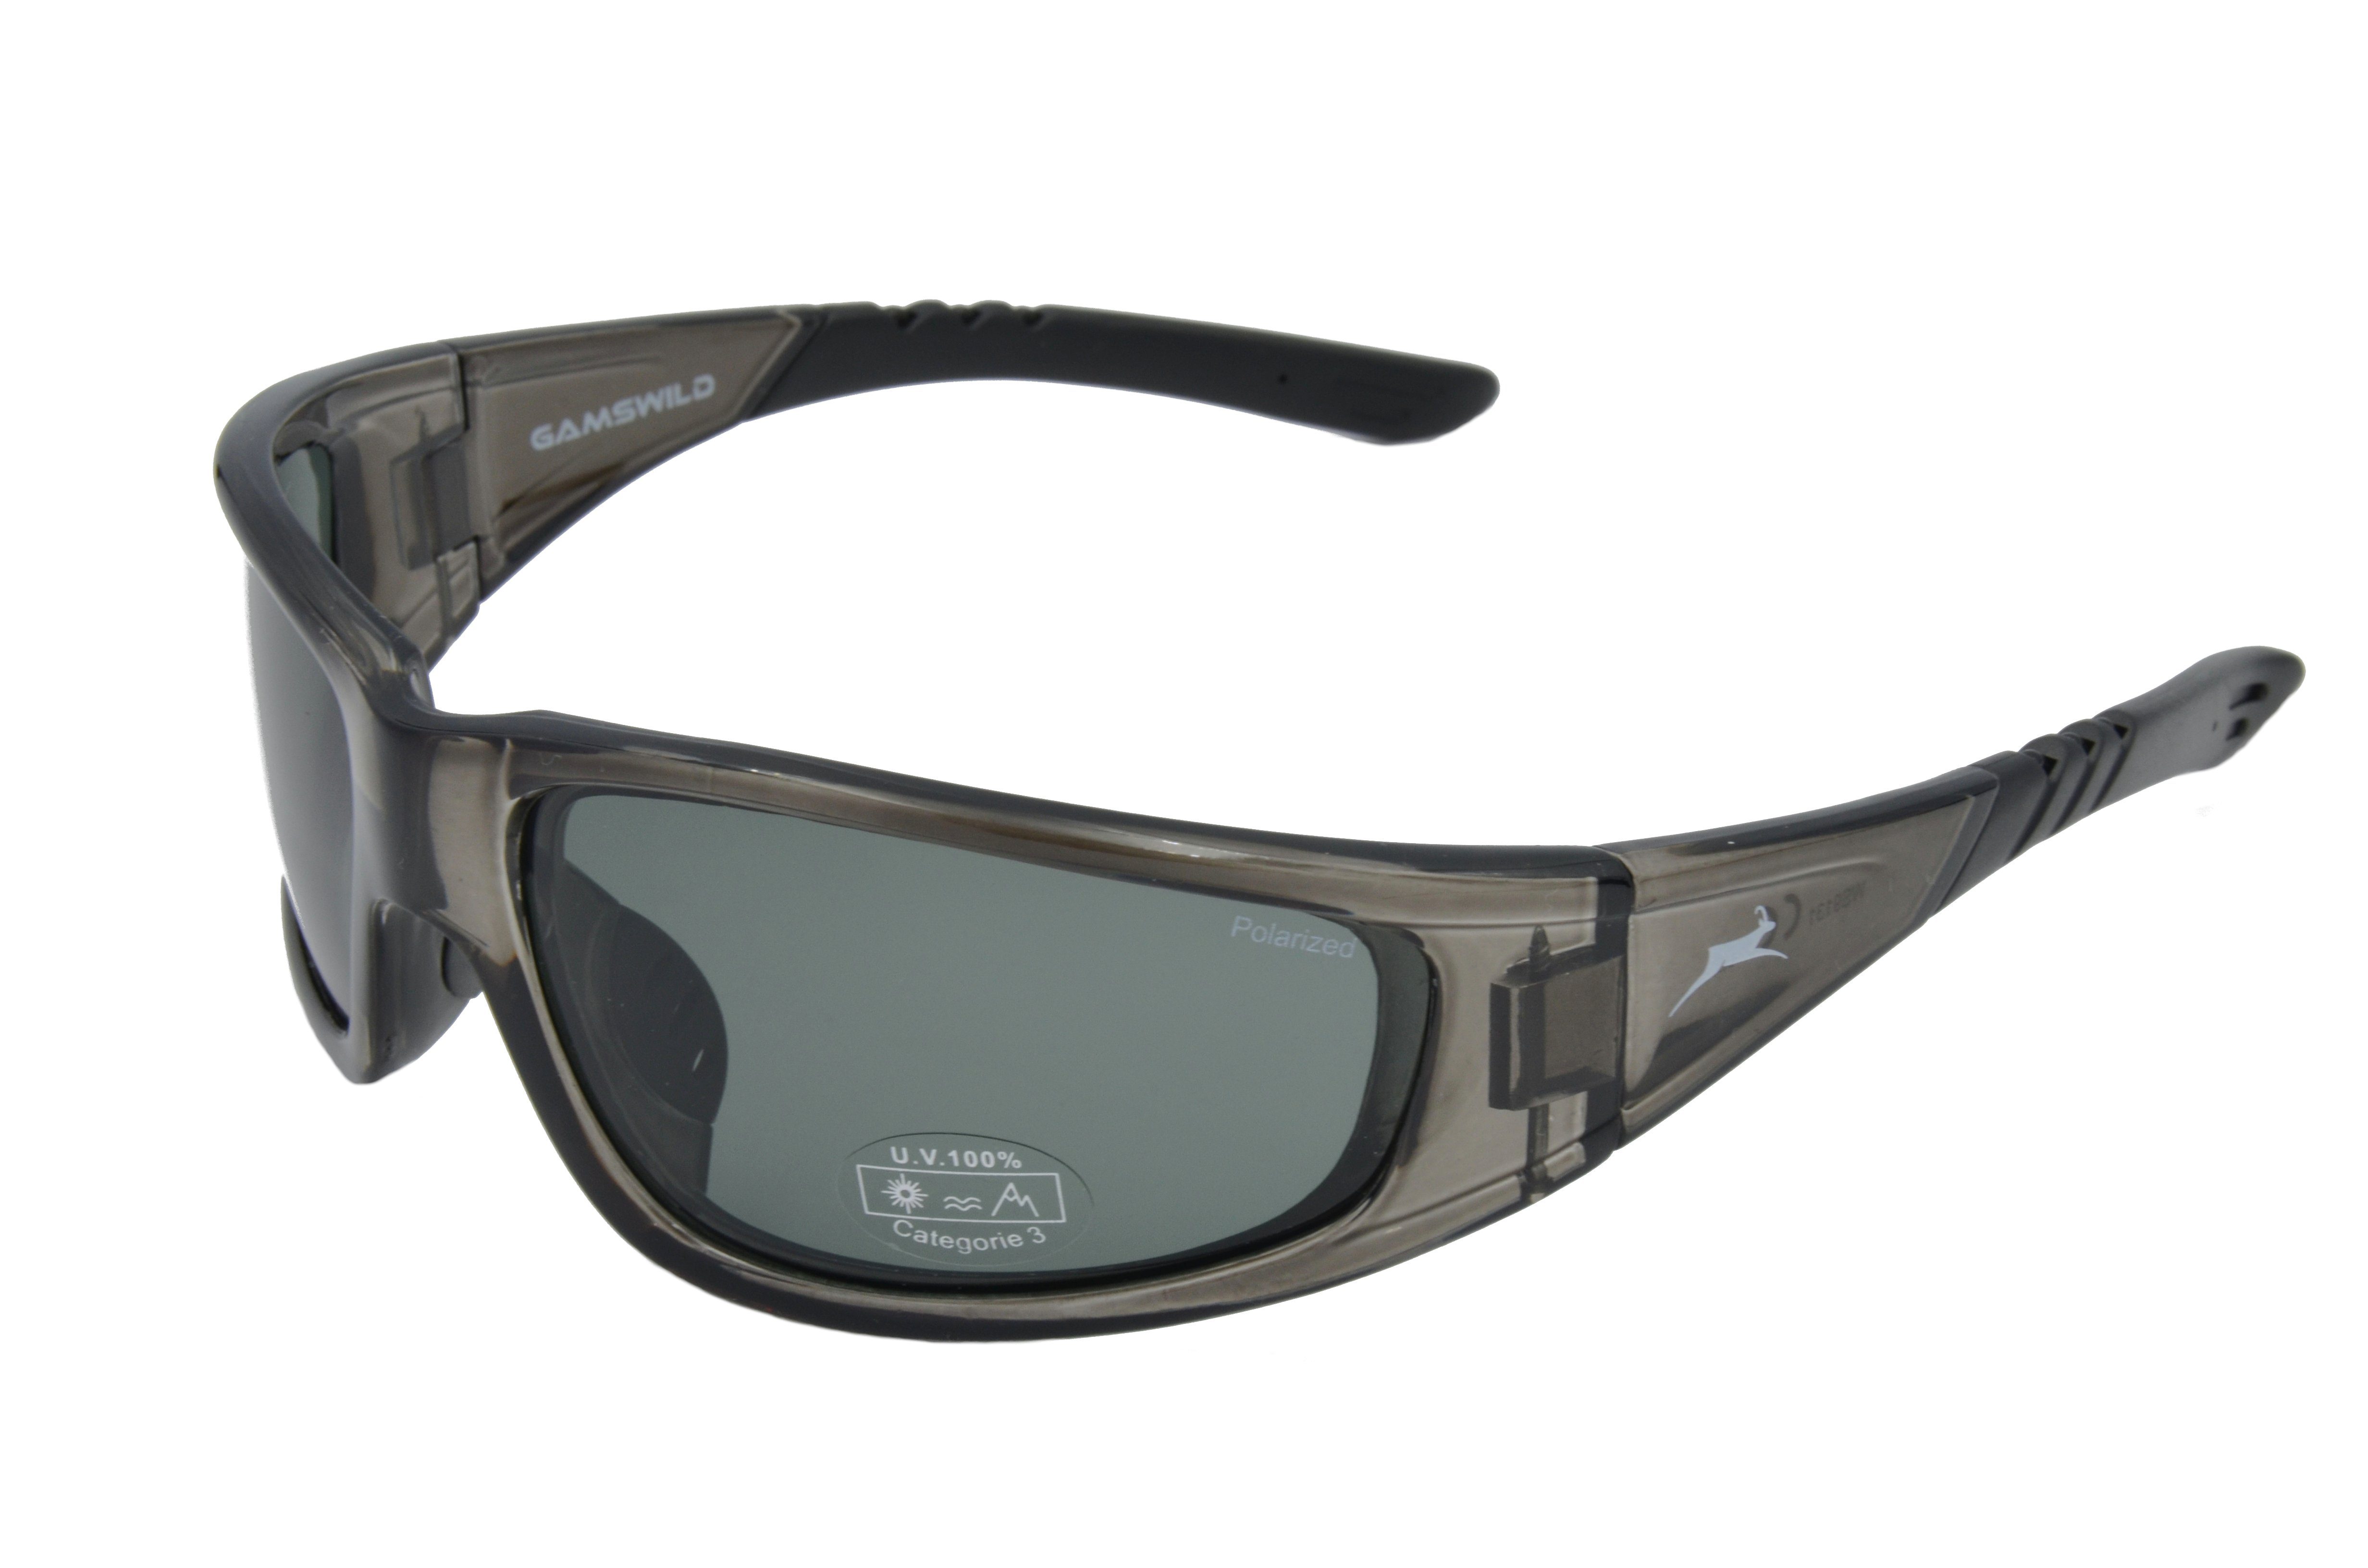 braun, Herren WS9131 Fahrradbrille polarisiert Unisex, Damen Skibrille Sportbrille Sonnenbrille Gamswild grau-transparent,